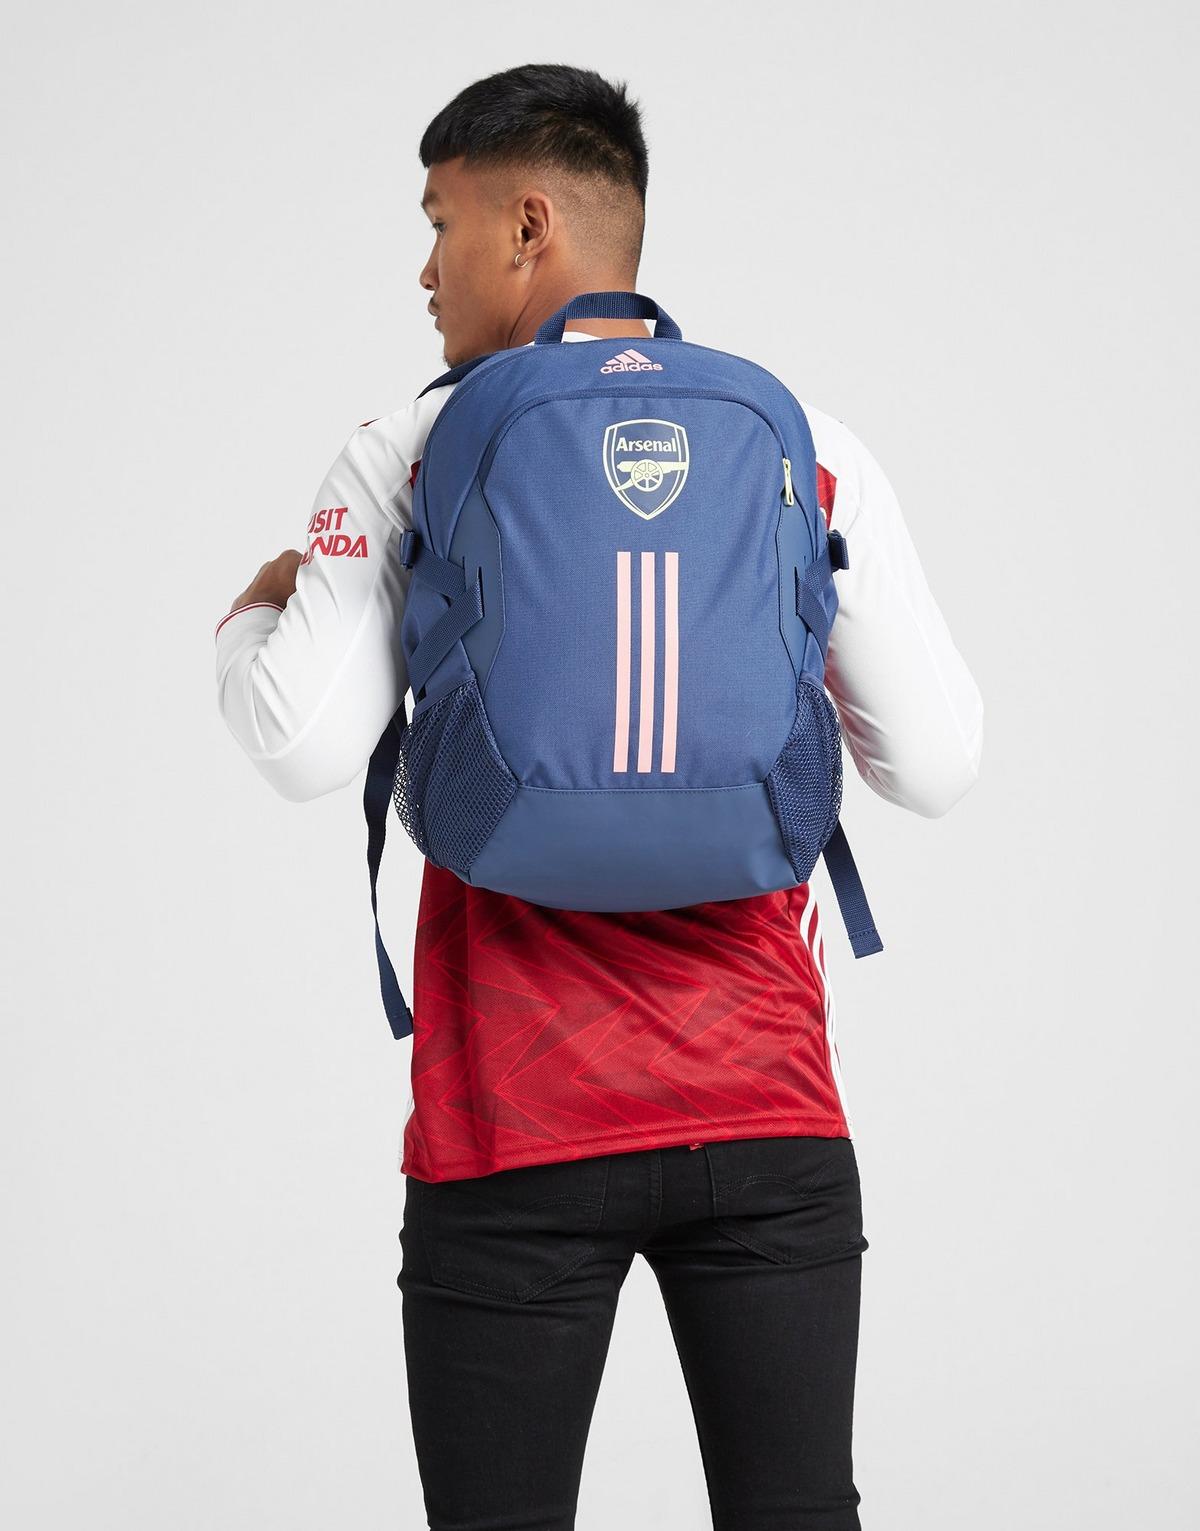 arsenal backpack adidas